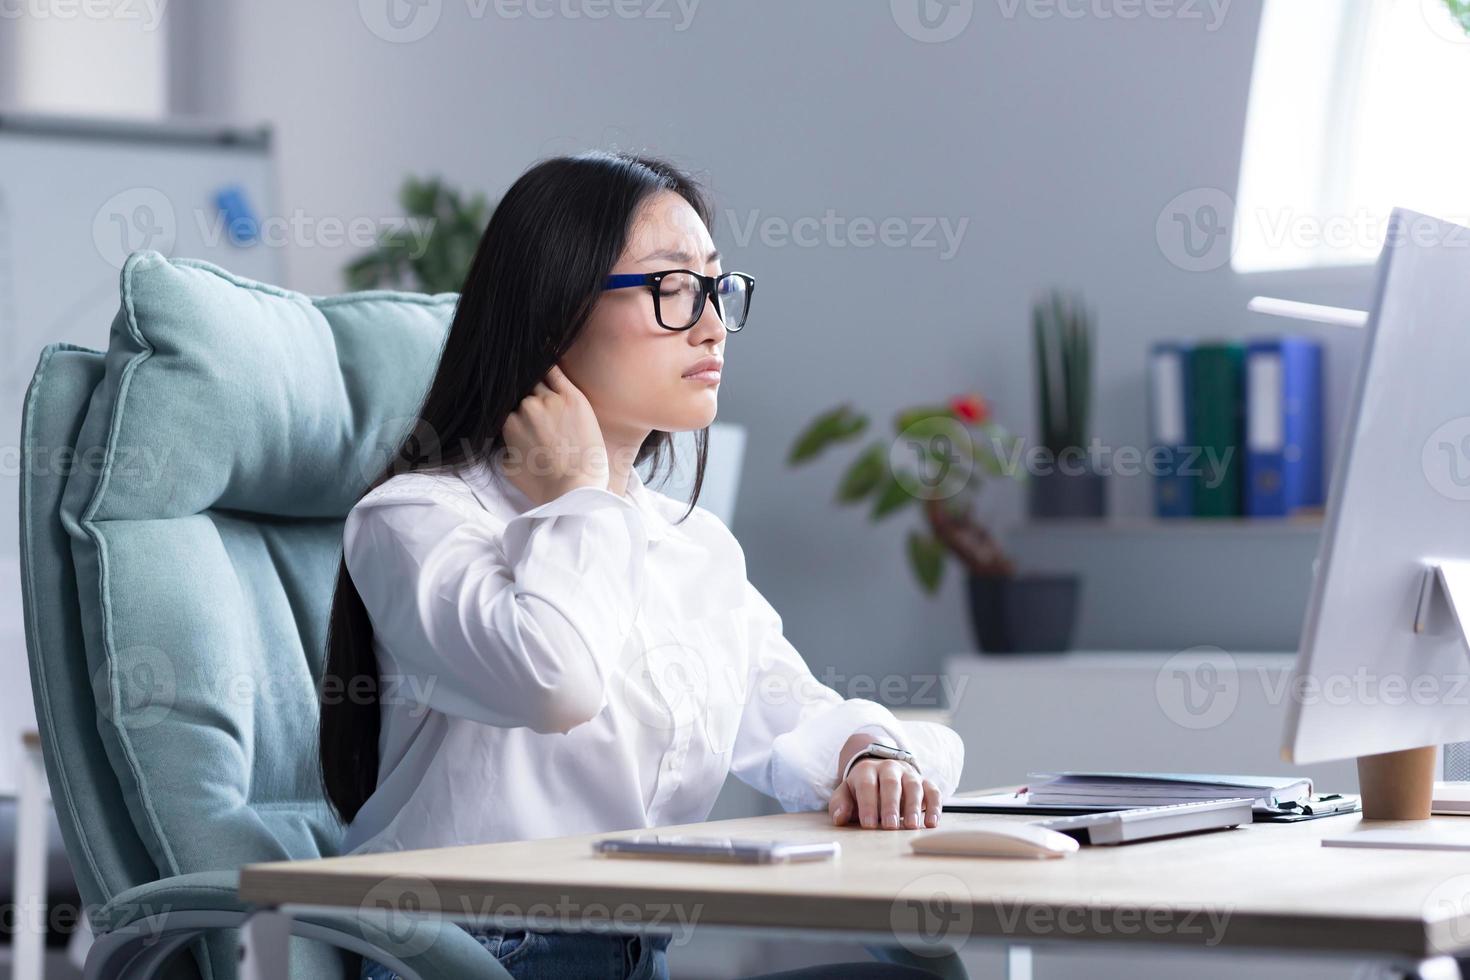 övertrött asiatisk kvinna kontor arbetstagare, har svår nacke smärta foto